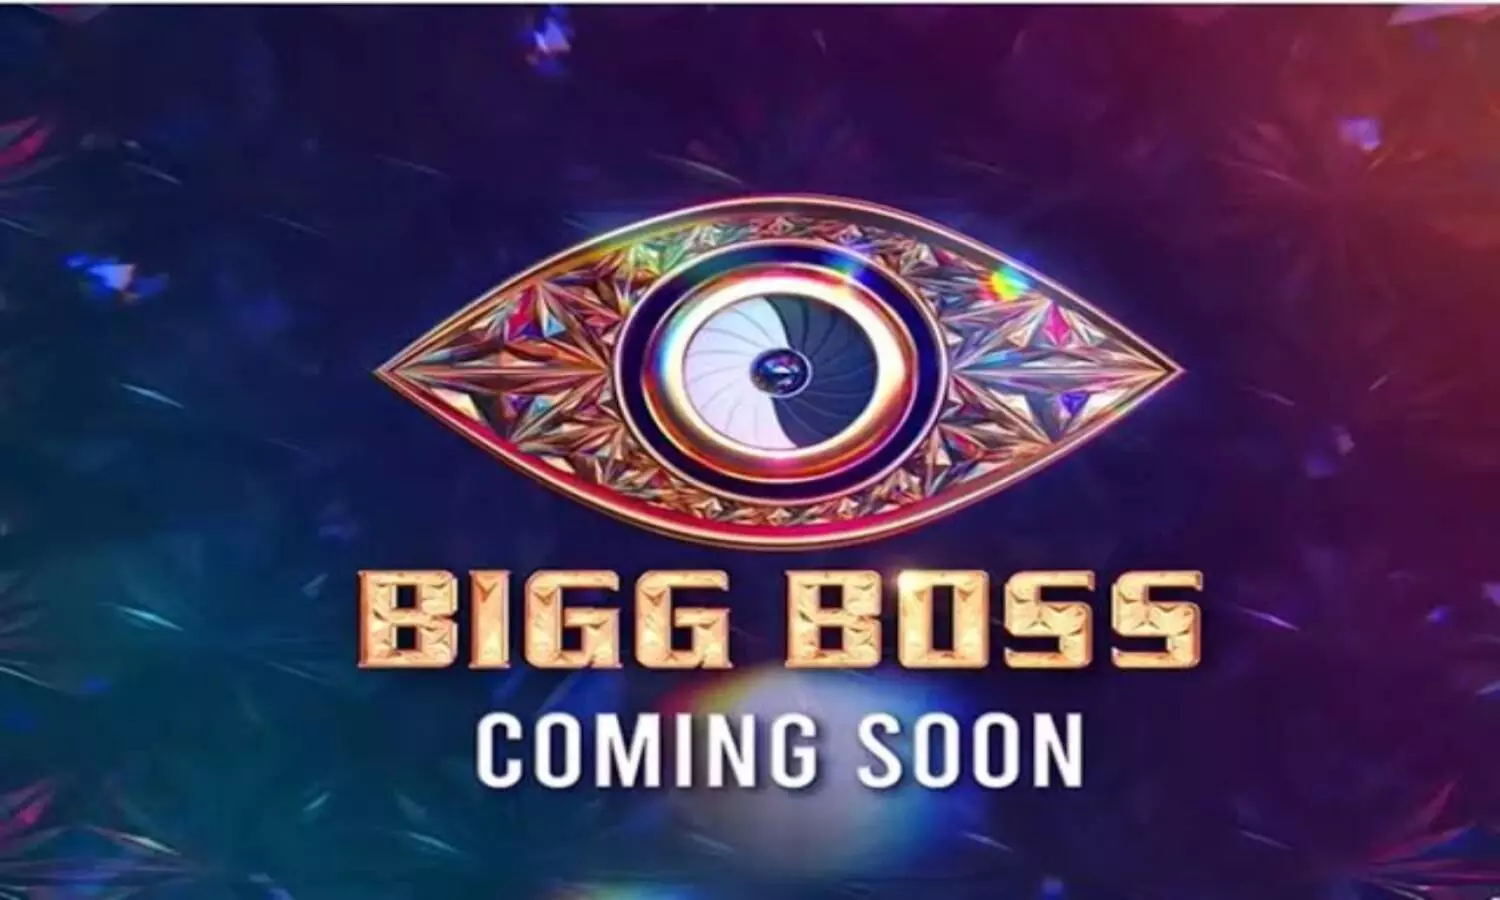 Bigg Boss16 Promo Out: बिगबॉस का प्रोमो आउट, दिखें पिछले 15 साल के सभी कंटेस्टेंट्स